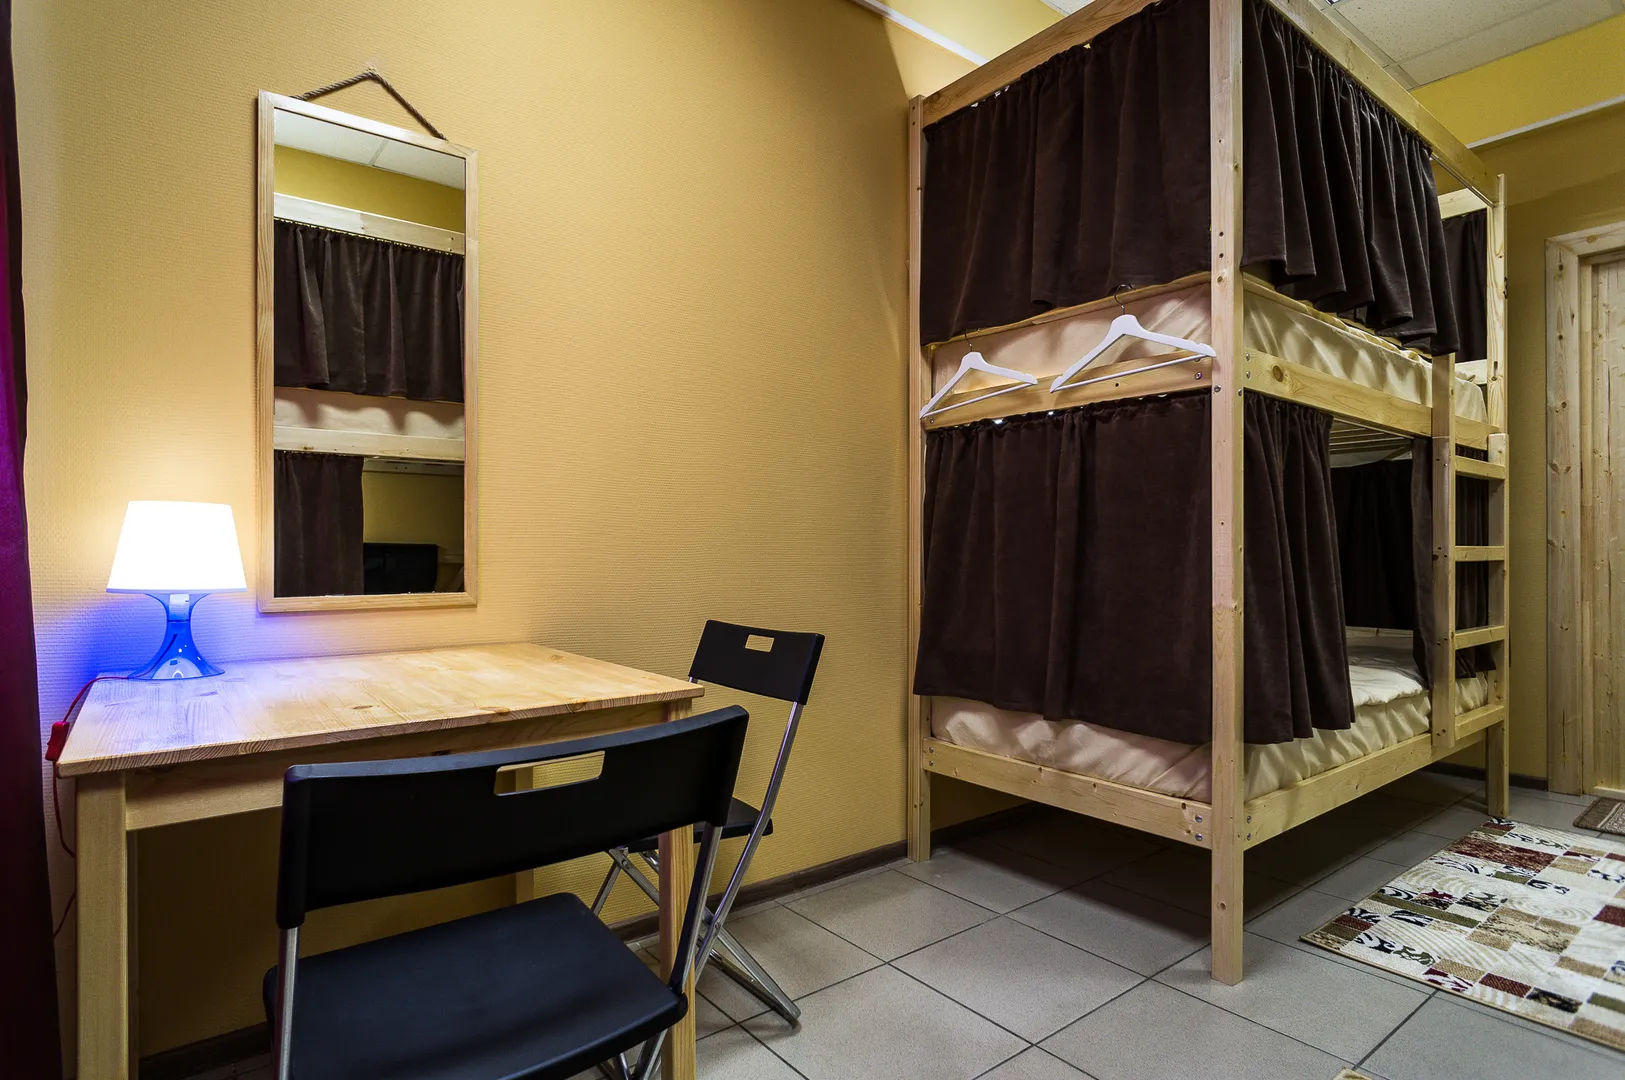 В каждом номере установлены просторные «королевские кровати» размером 200*90